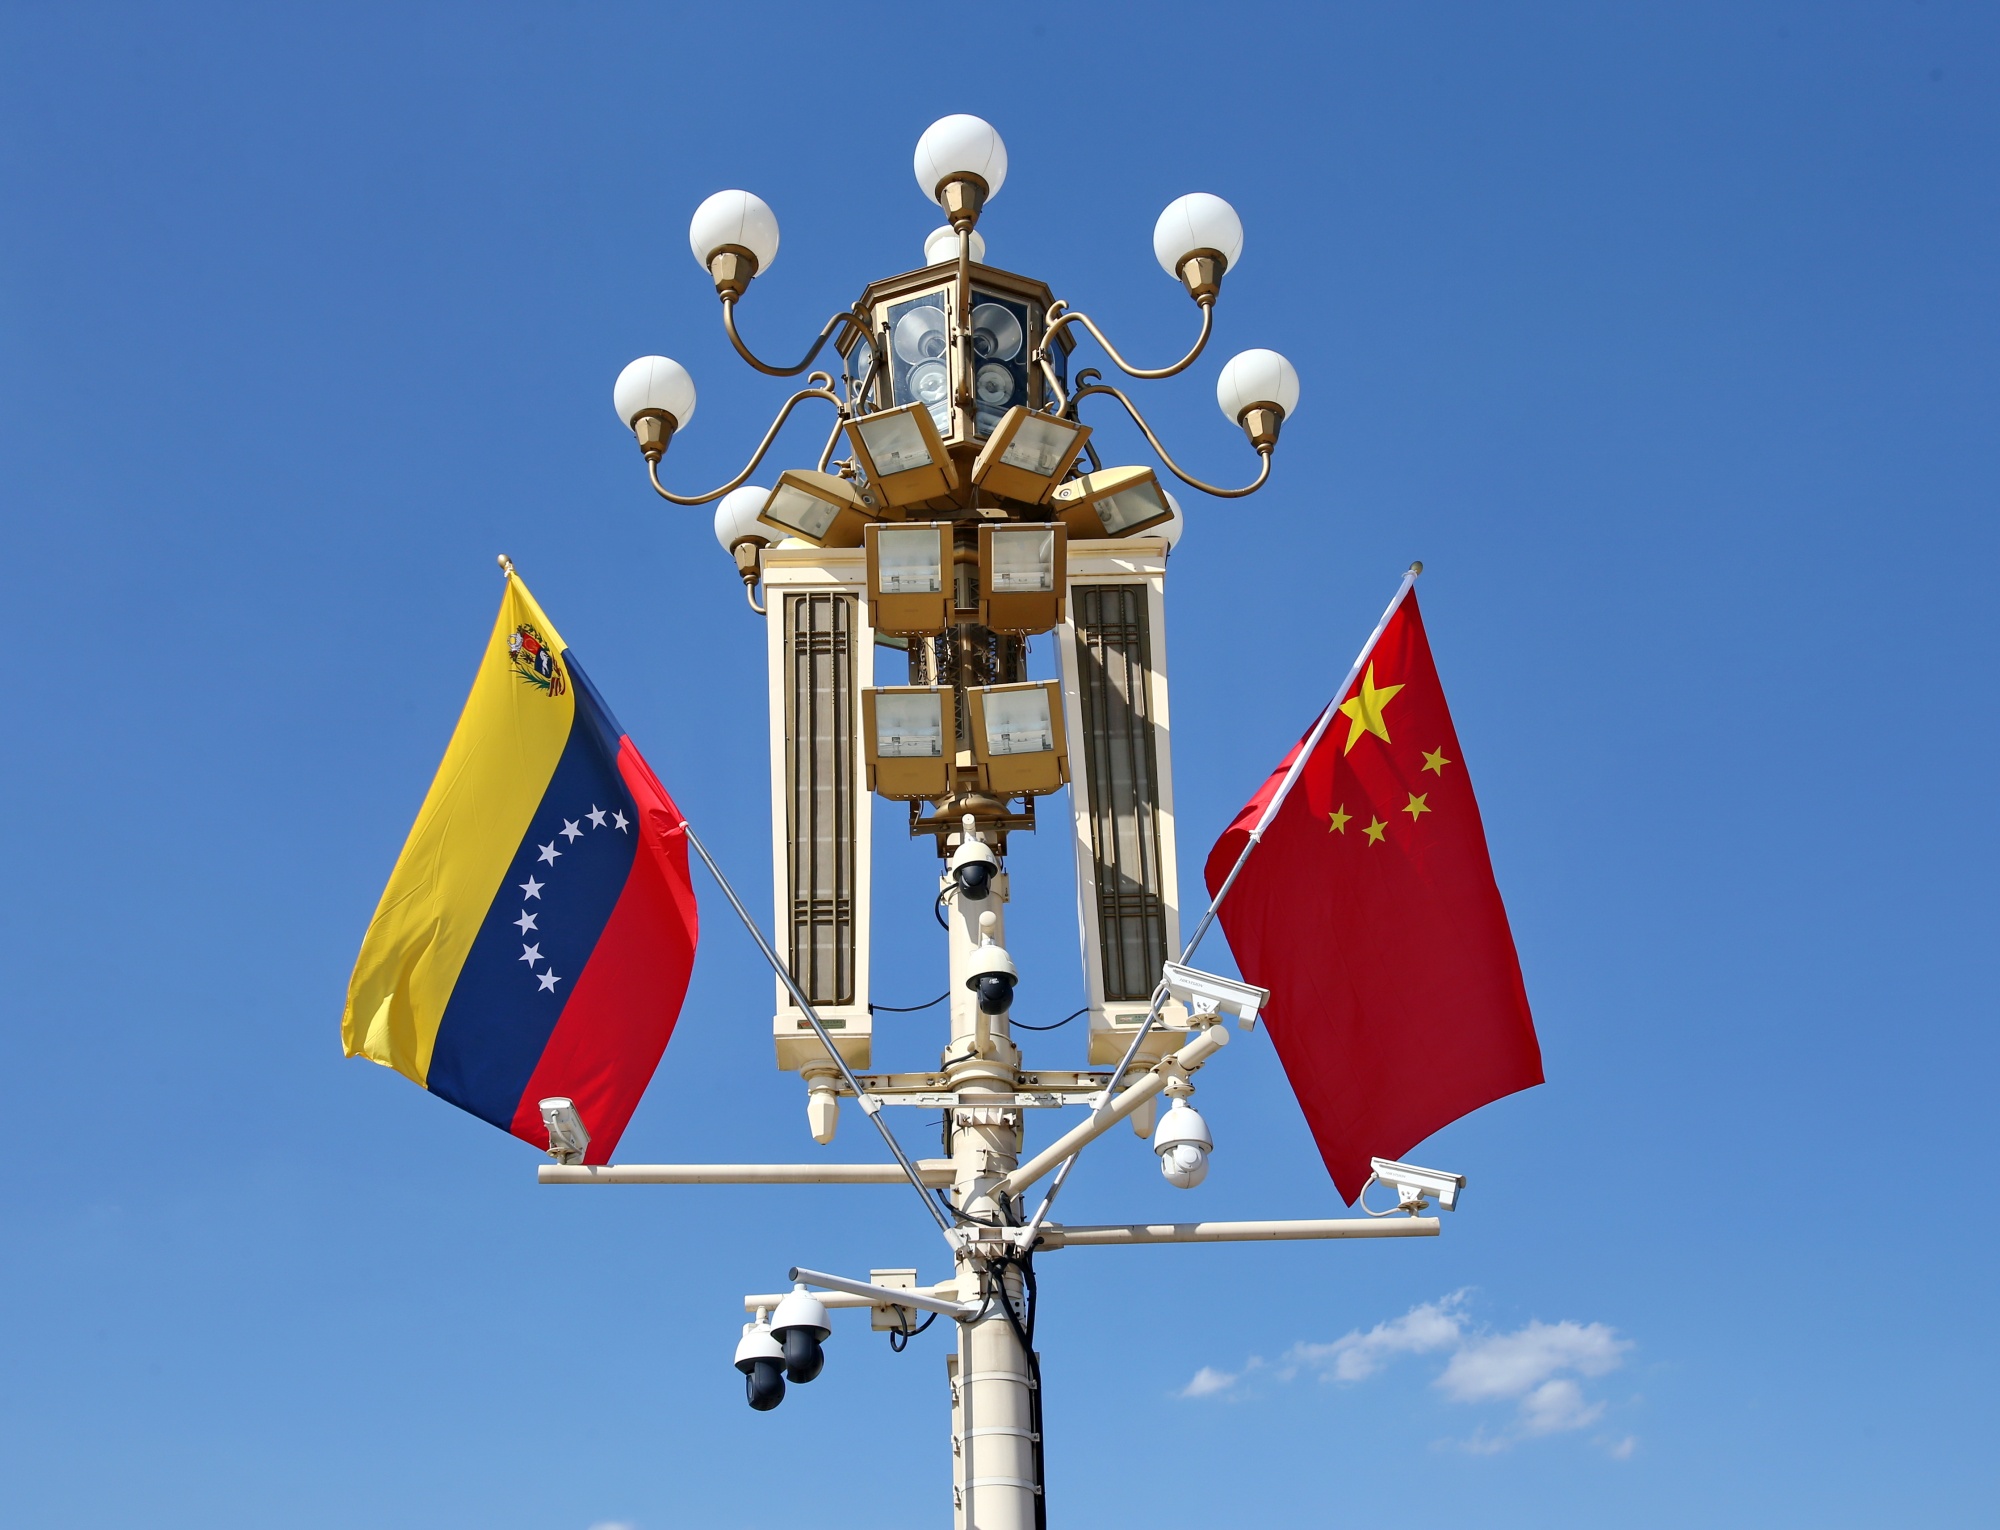 Xi: China, Venezuela anuncian asociación durante viaje de Maduro - Bloomberg